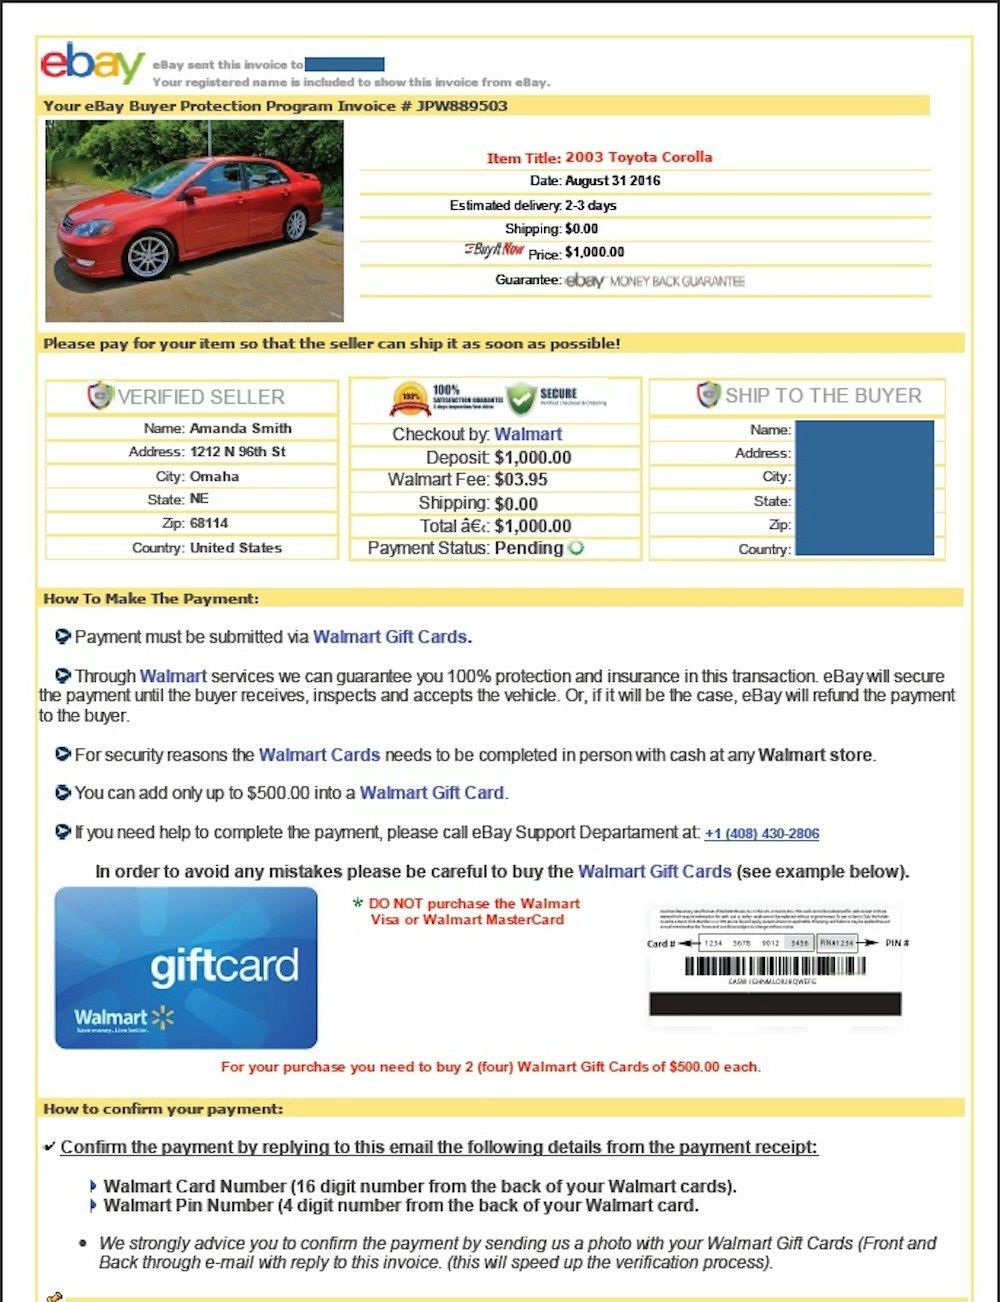 Example of eBay Motors stolen vehicle scam